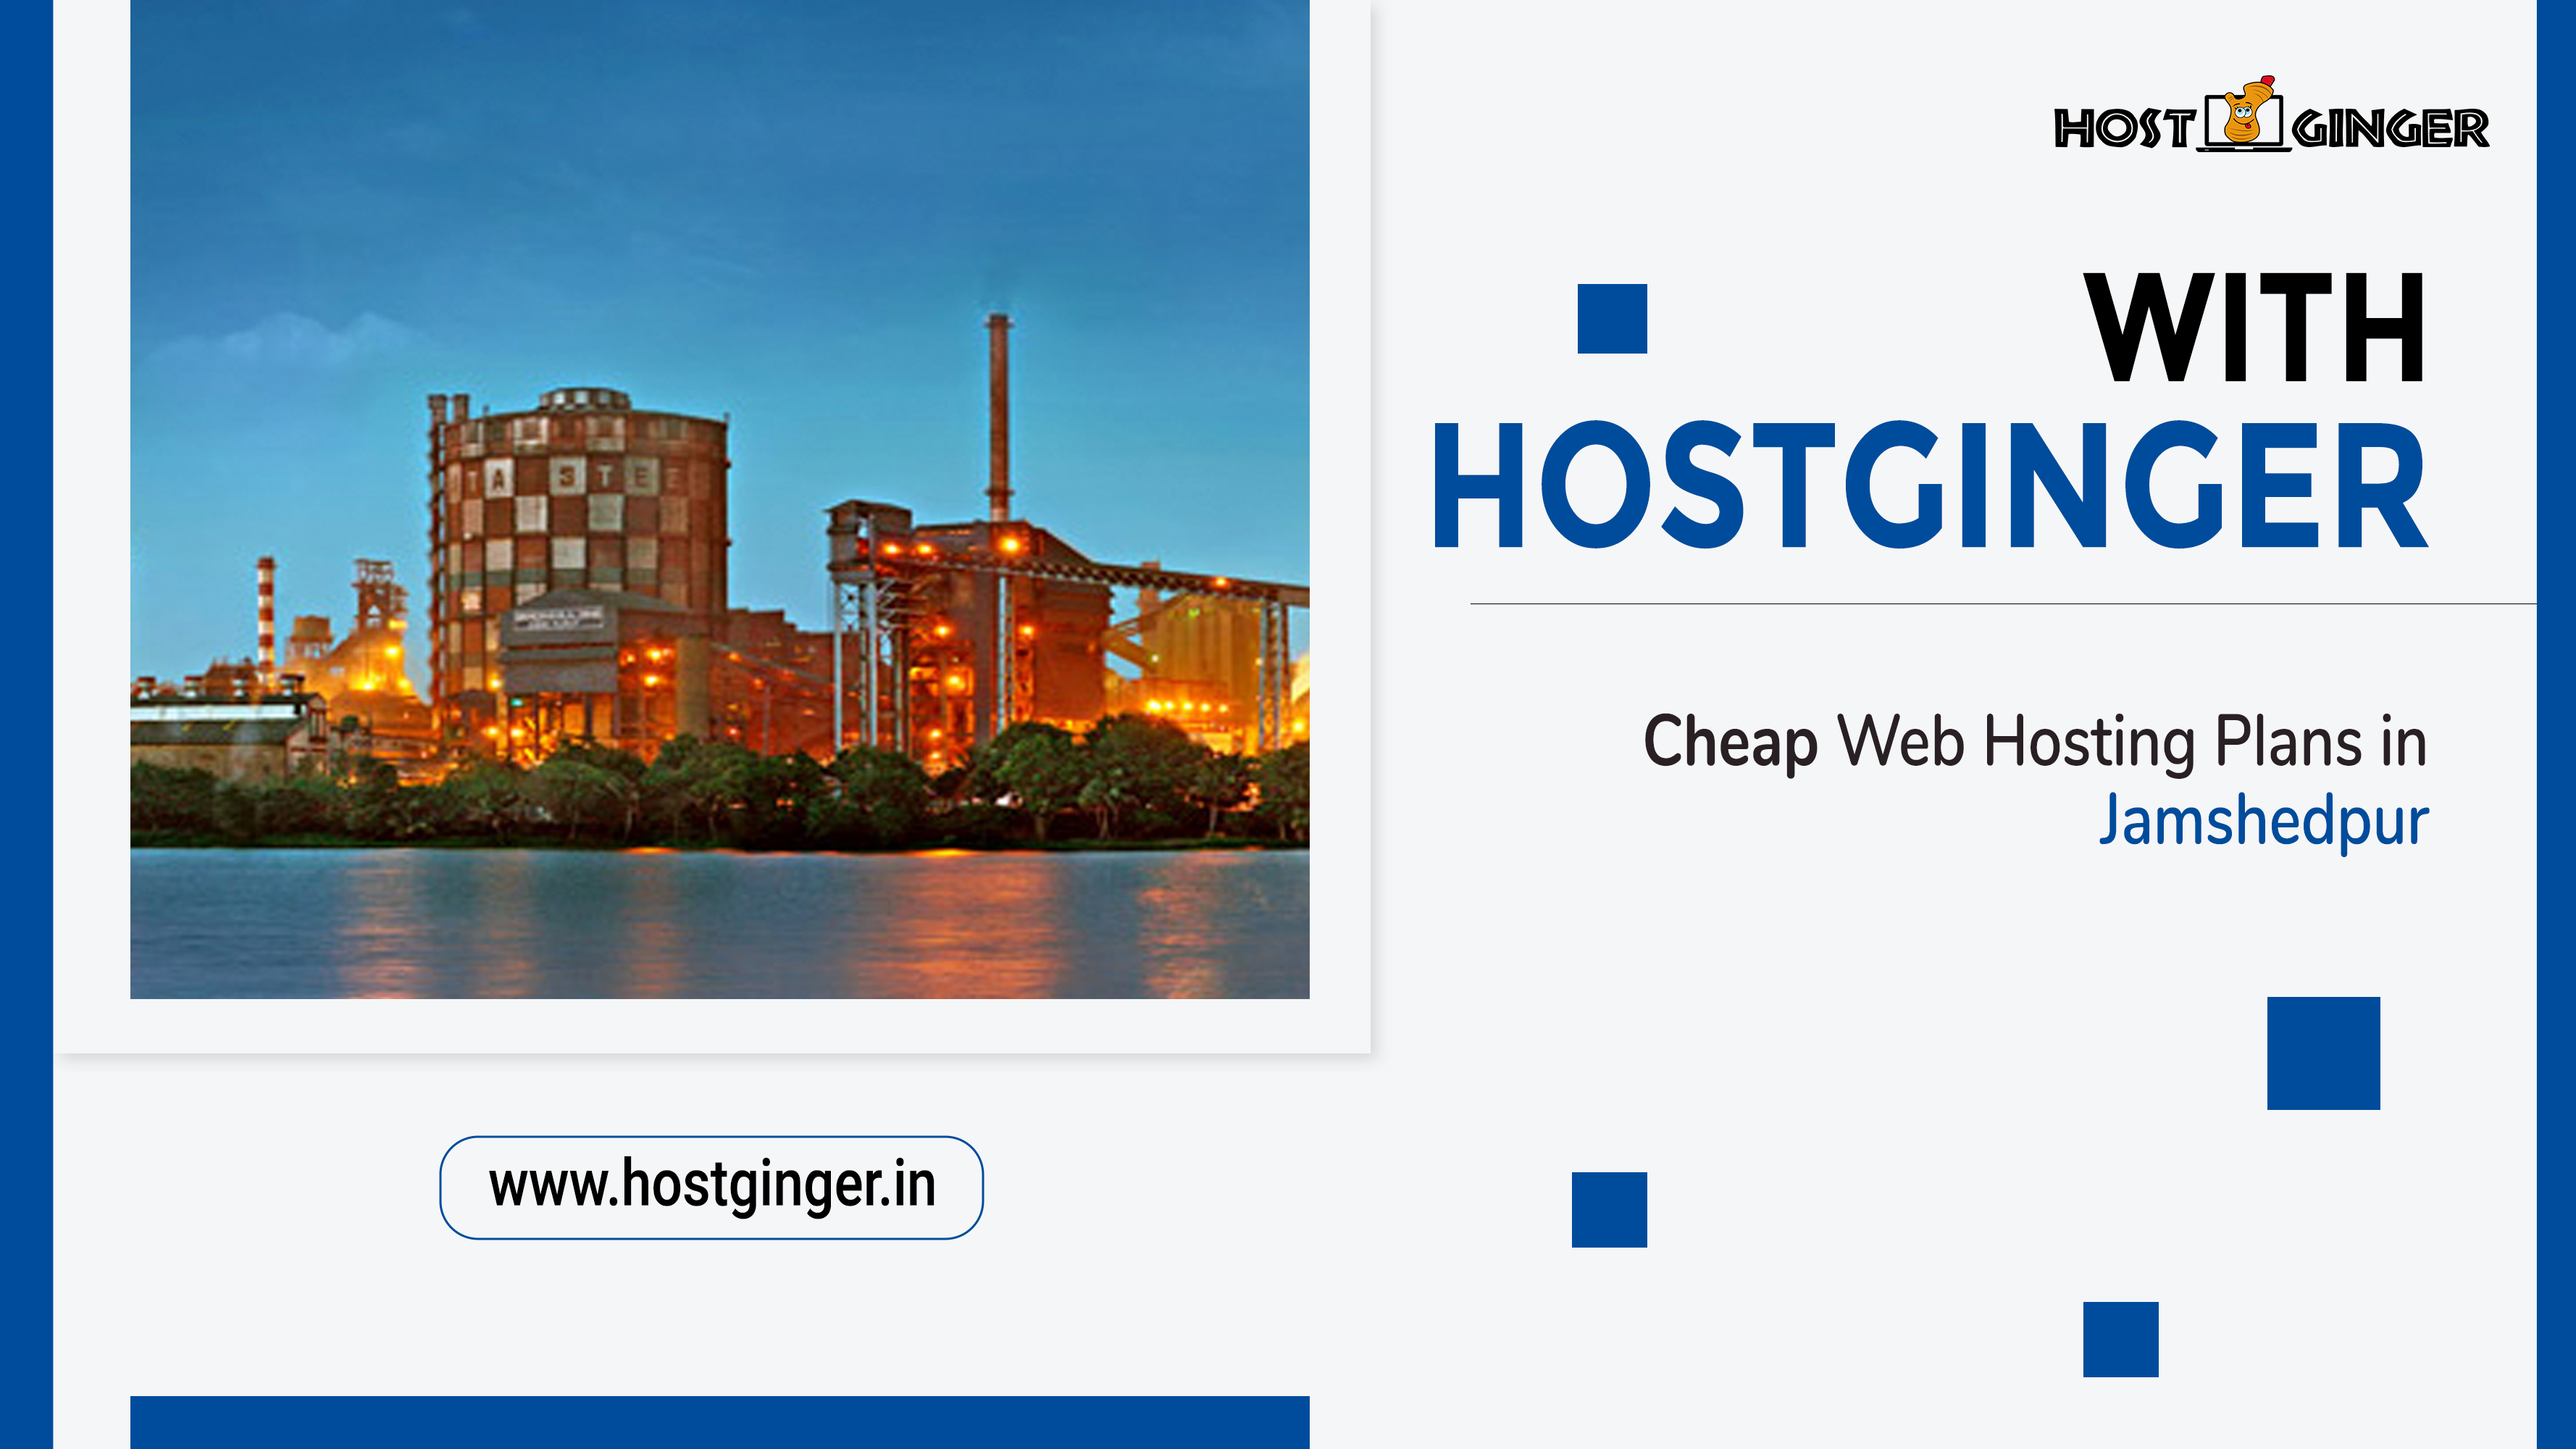 Affordable Web Hosting Plans in Jamshedpur